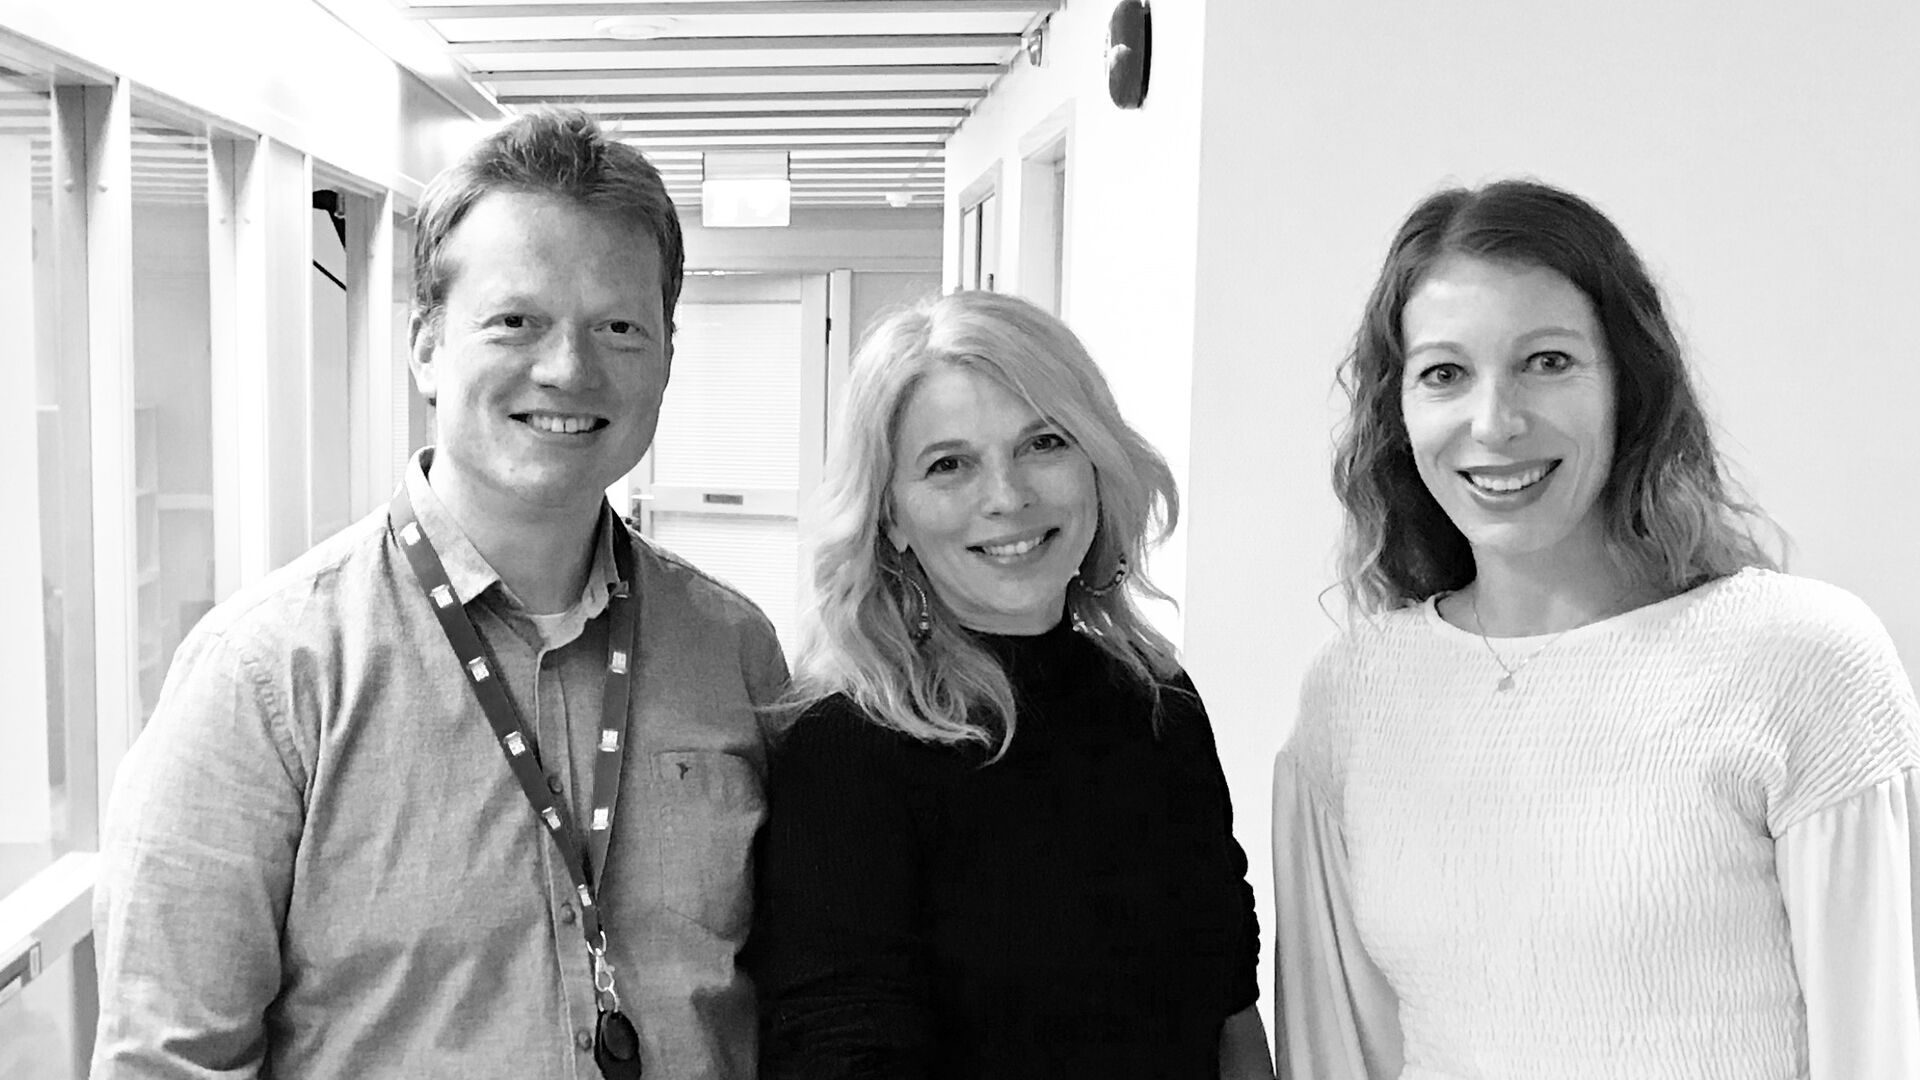 Med veiledereFra venstre: Eivind Engebretsen, Siv Vea Grønneberg og Stine Torp Løkkeberg